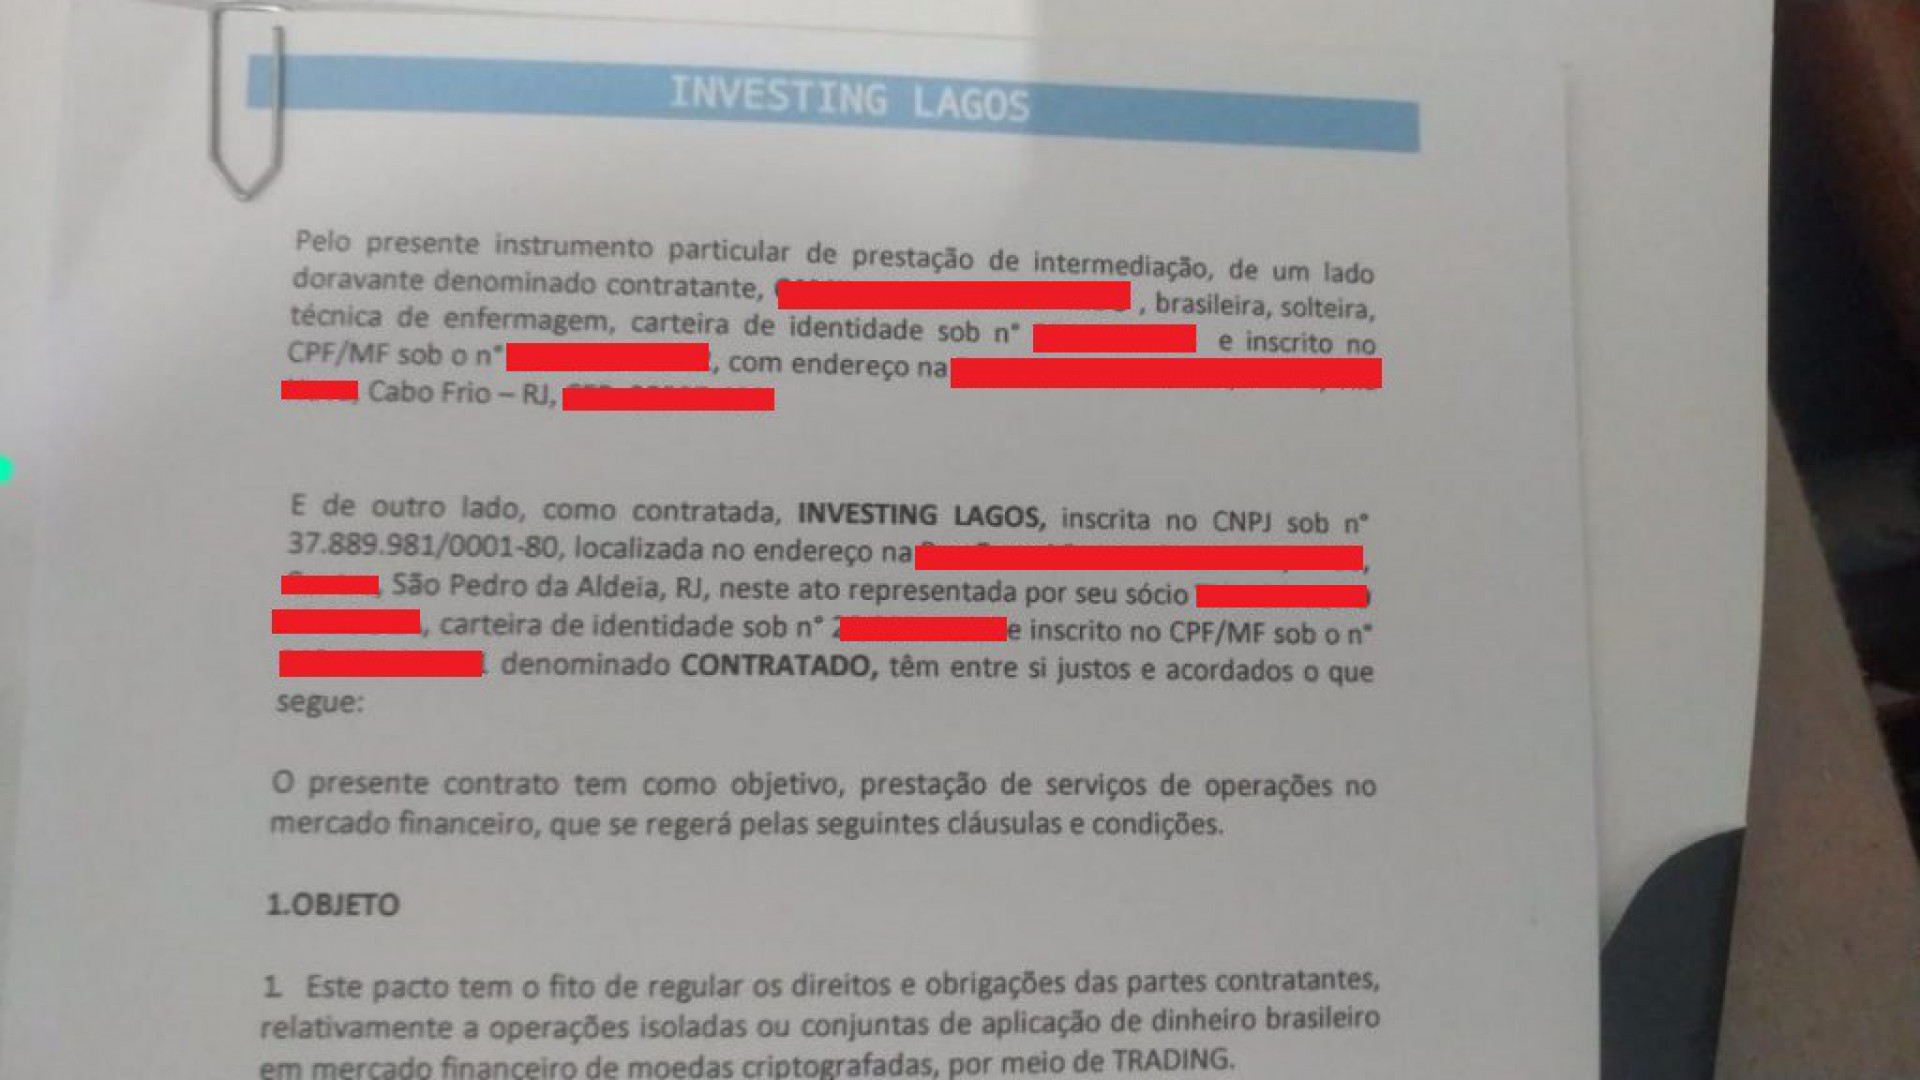 Com o montante investido, não tem sobrado nem para o aluguel - Luiz Felipe Rodrigues (RC24h)